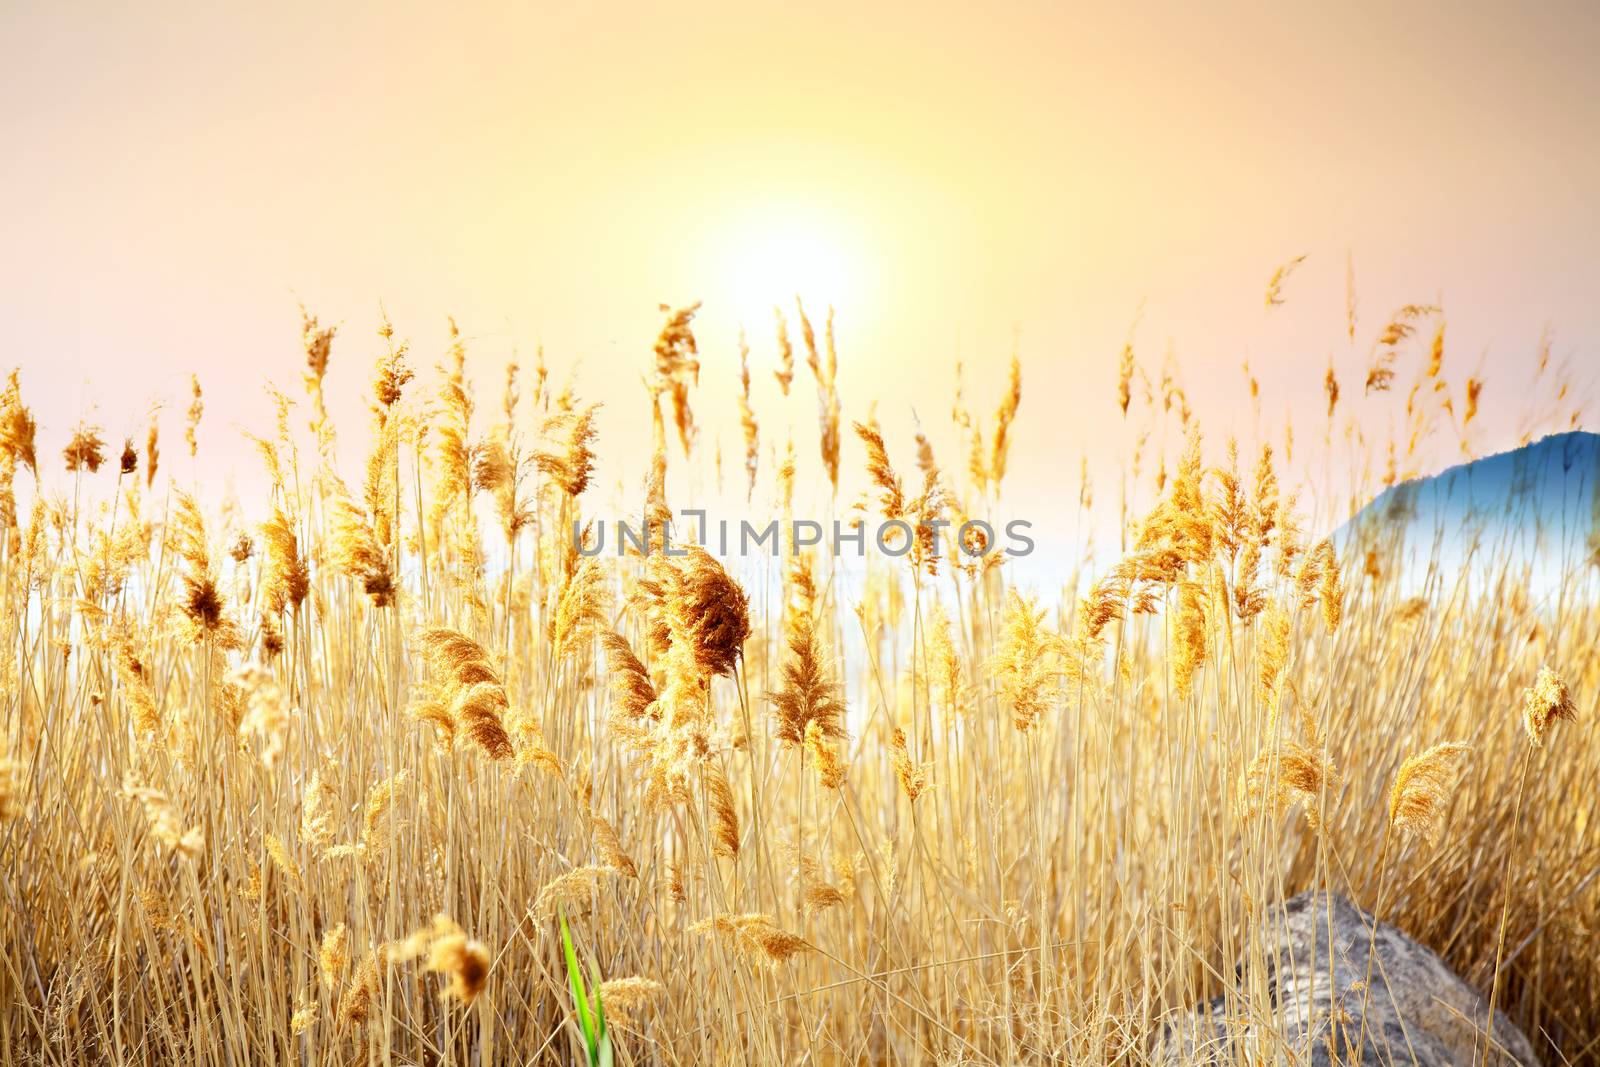 Tall yellow grass against background of orange sunset by jarenwicklund